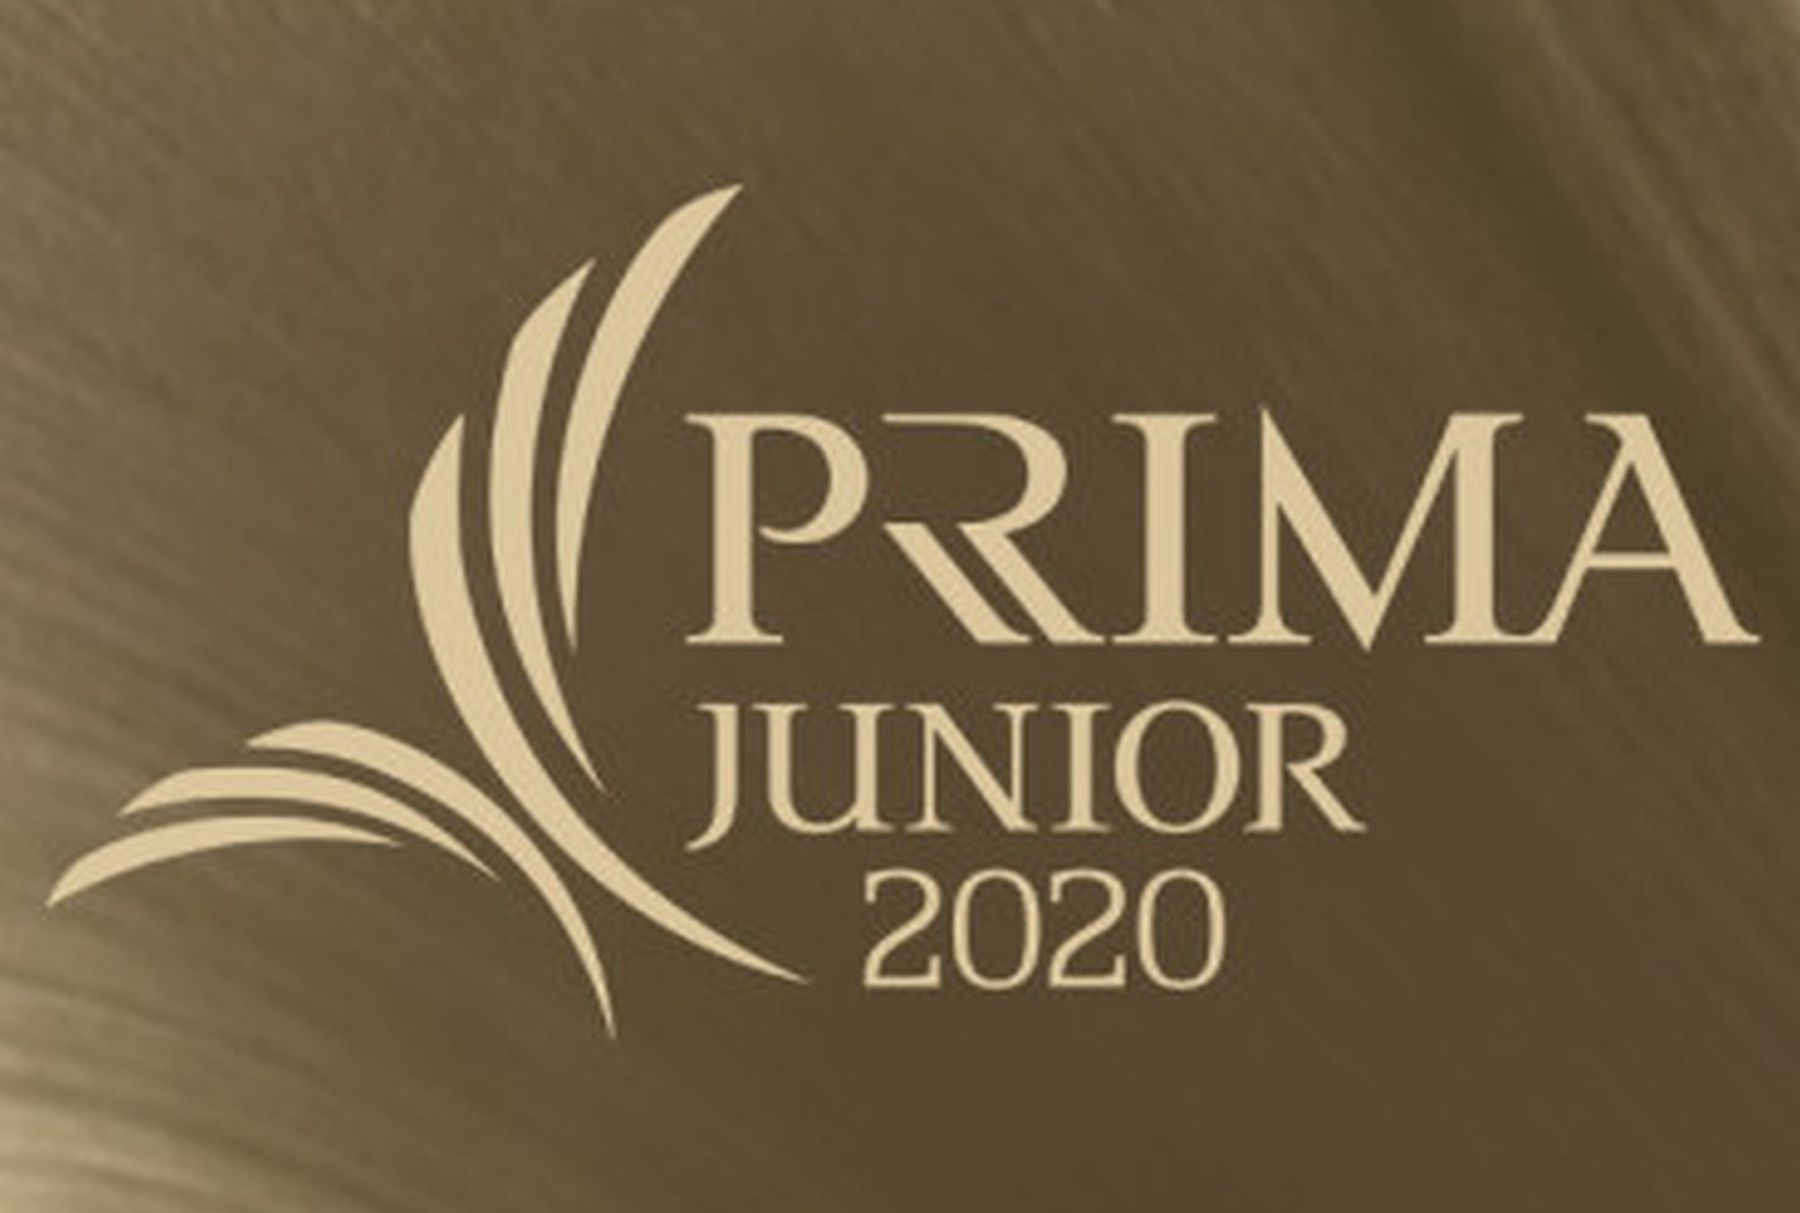 Junior Prima díj 2020 - már várják a jelöléseket a népművészeti kategóriában